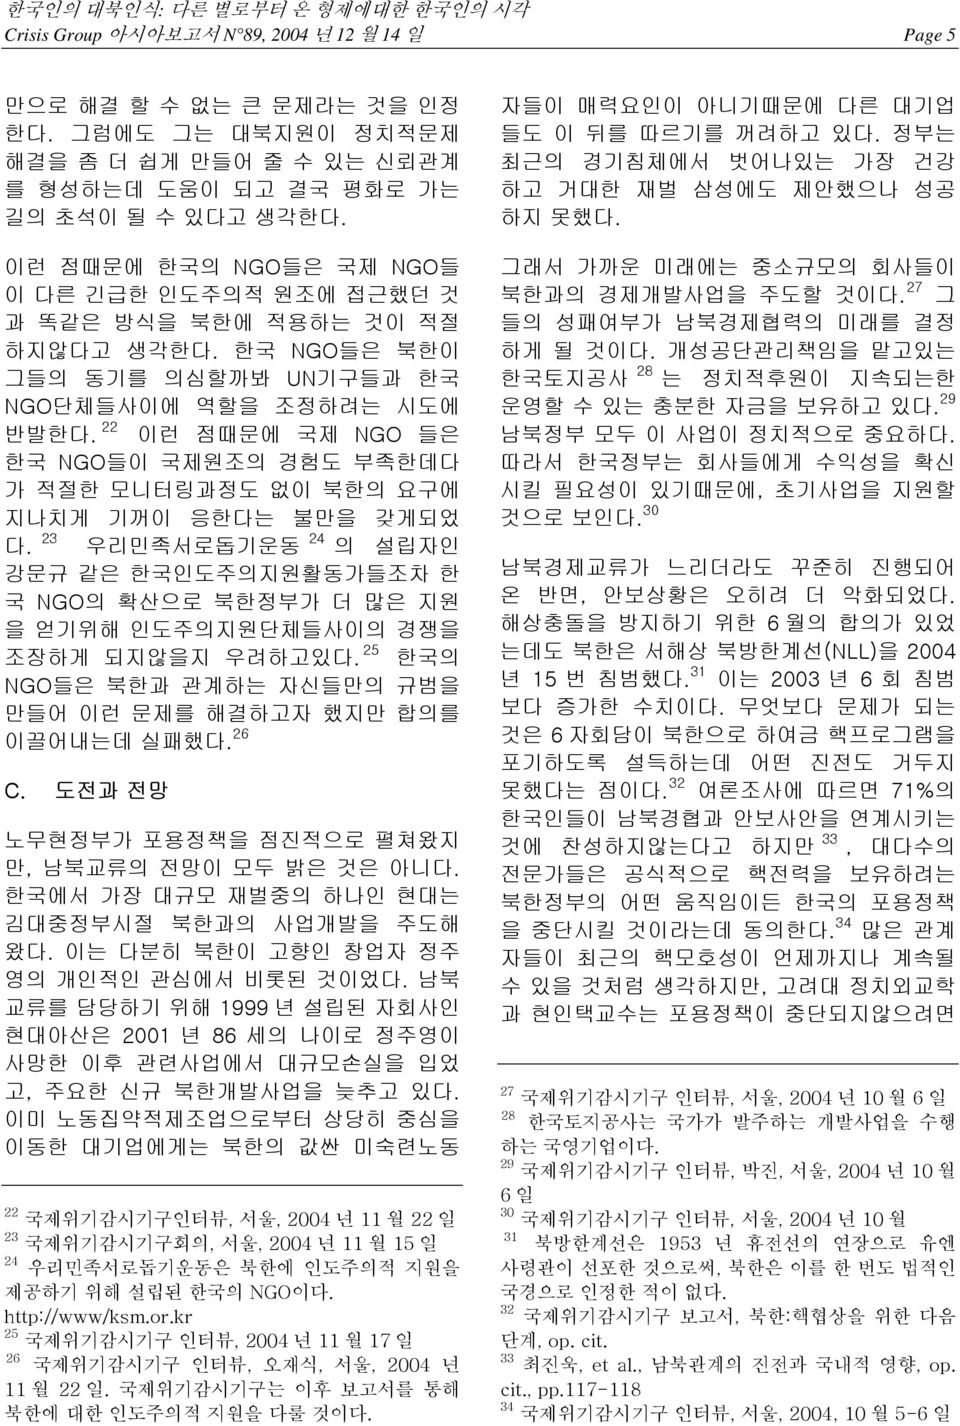 22 이런 점때문에 국제 NGO 들은 한국 NGO들이 국제원조의 경험도 부족한데다 가 적절한 모니터링과정도 없이 북한의 요구에 지나치게 기꺼이 응한다는 불만을 갖게되었 다.